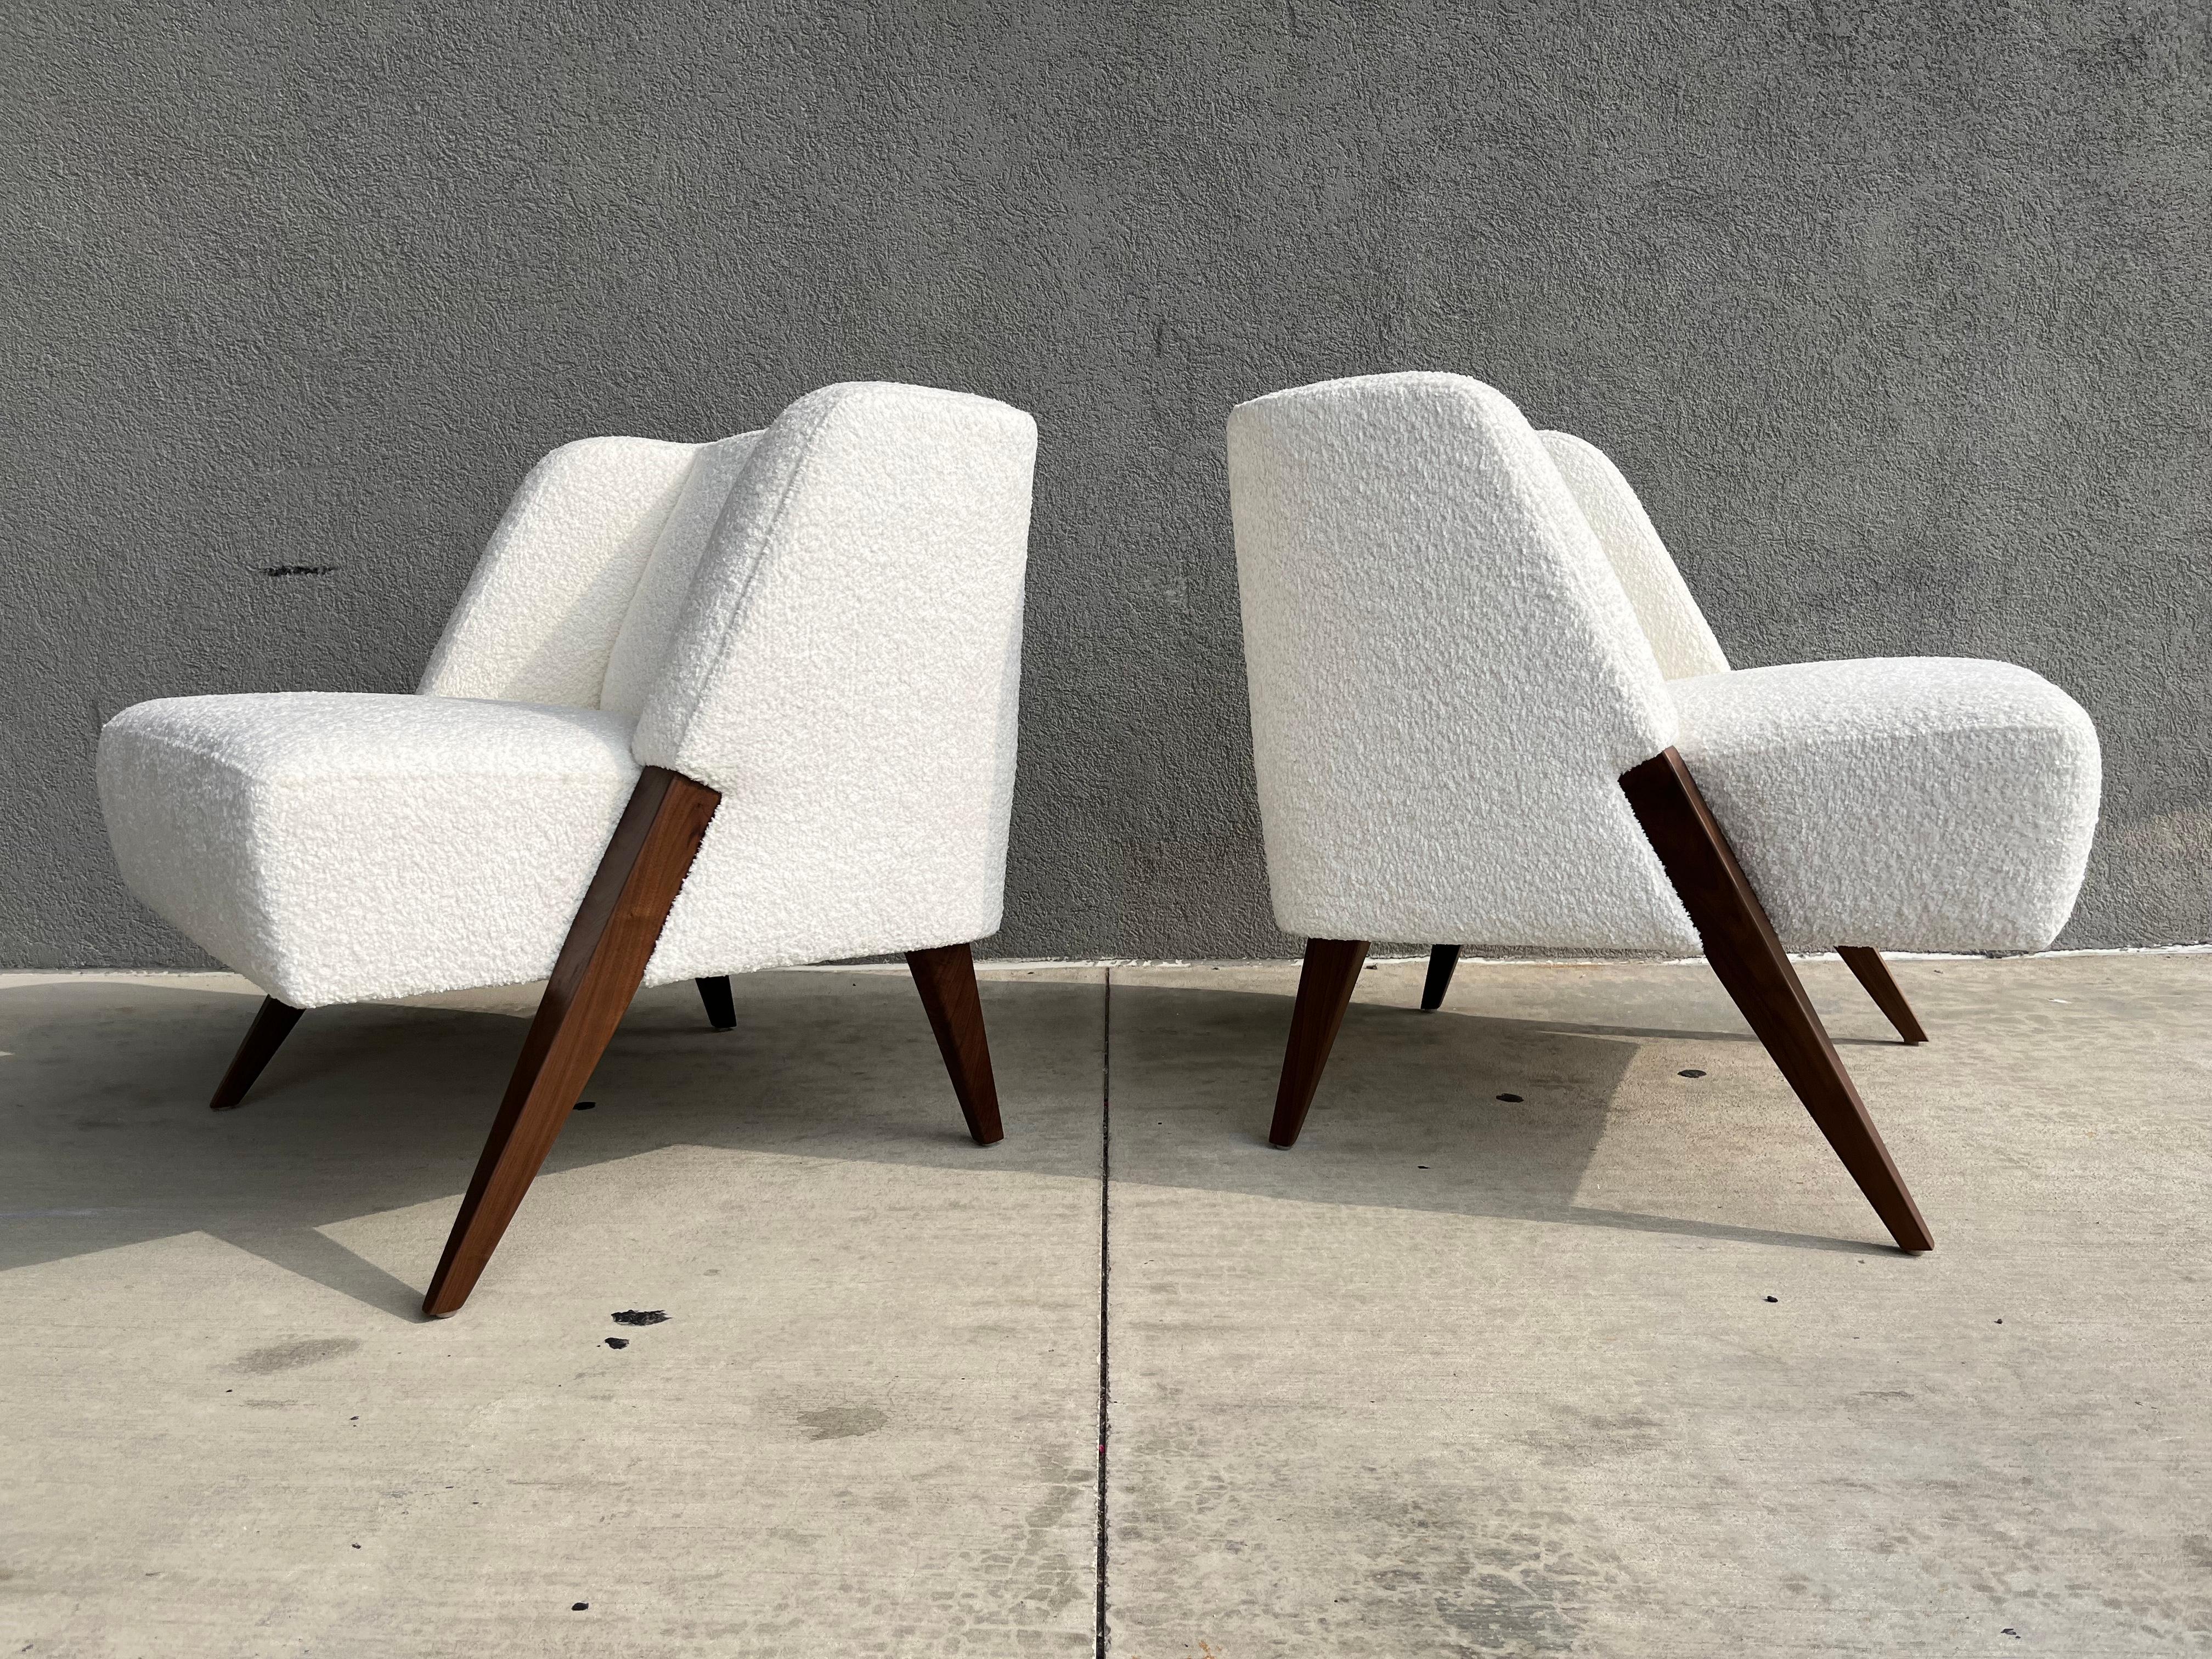 Unglaubliches Paar RUTH Lounge Chairs von Dosbananos im Stil von Gio Ponti. Beine aus massivem Walnussholz und elfenbeinfarbener Bouclé-Stoff. Bereit für ein neues Zuhause.